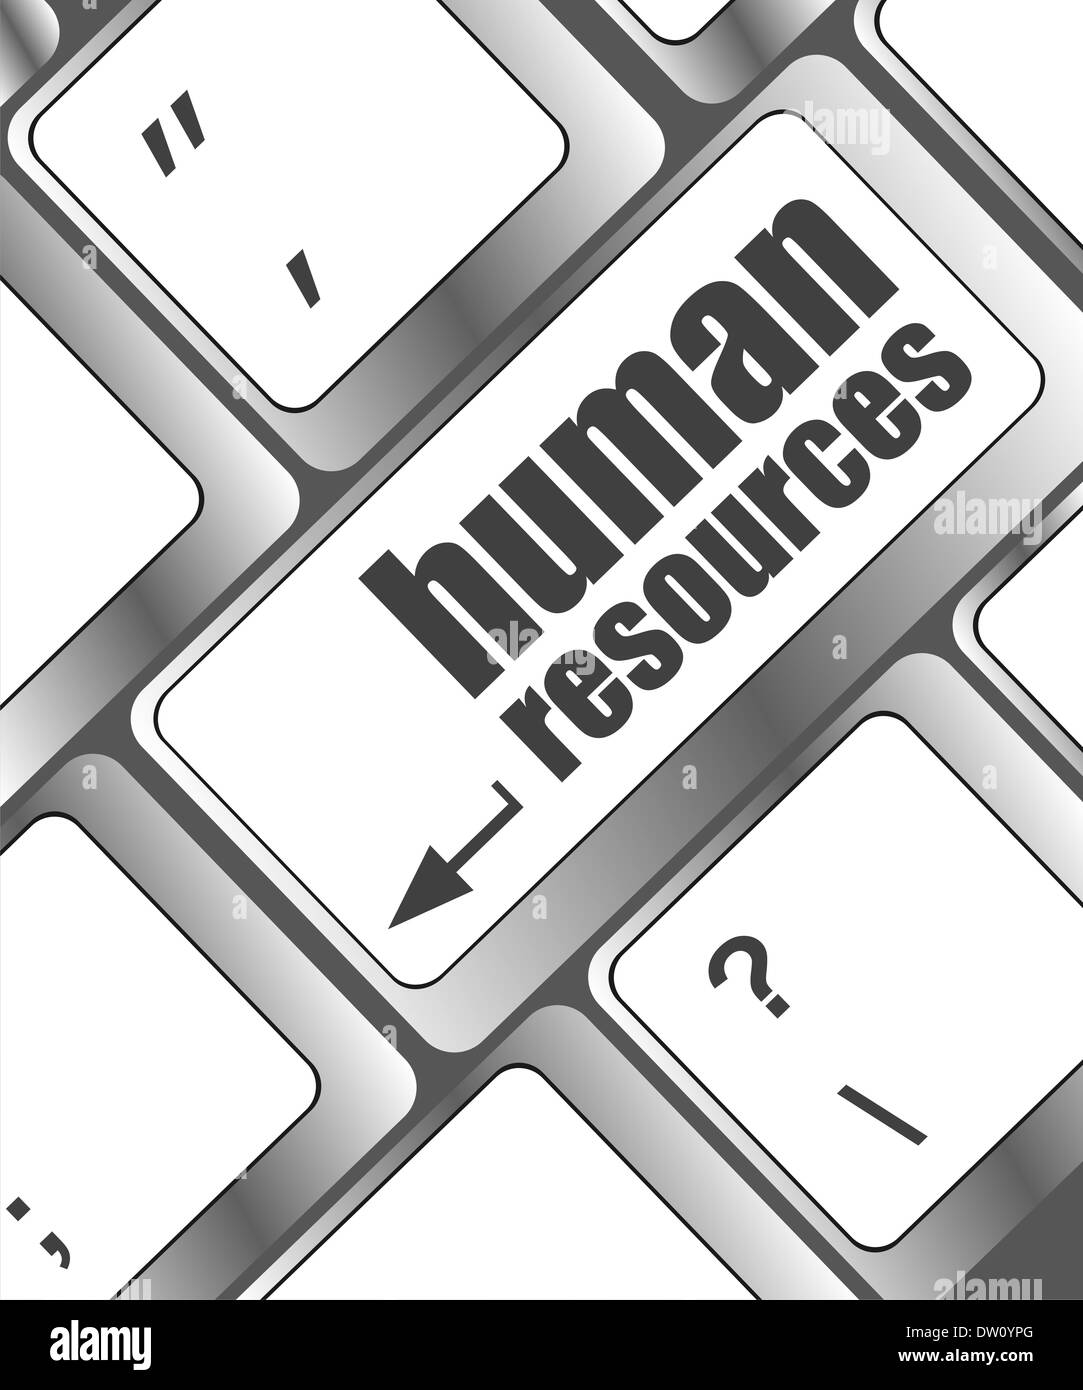 Ressources humaines texte sur clavier d'ordinateur portable Banque D'Images